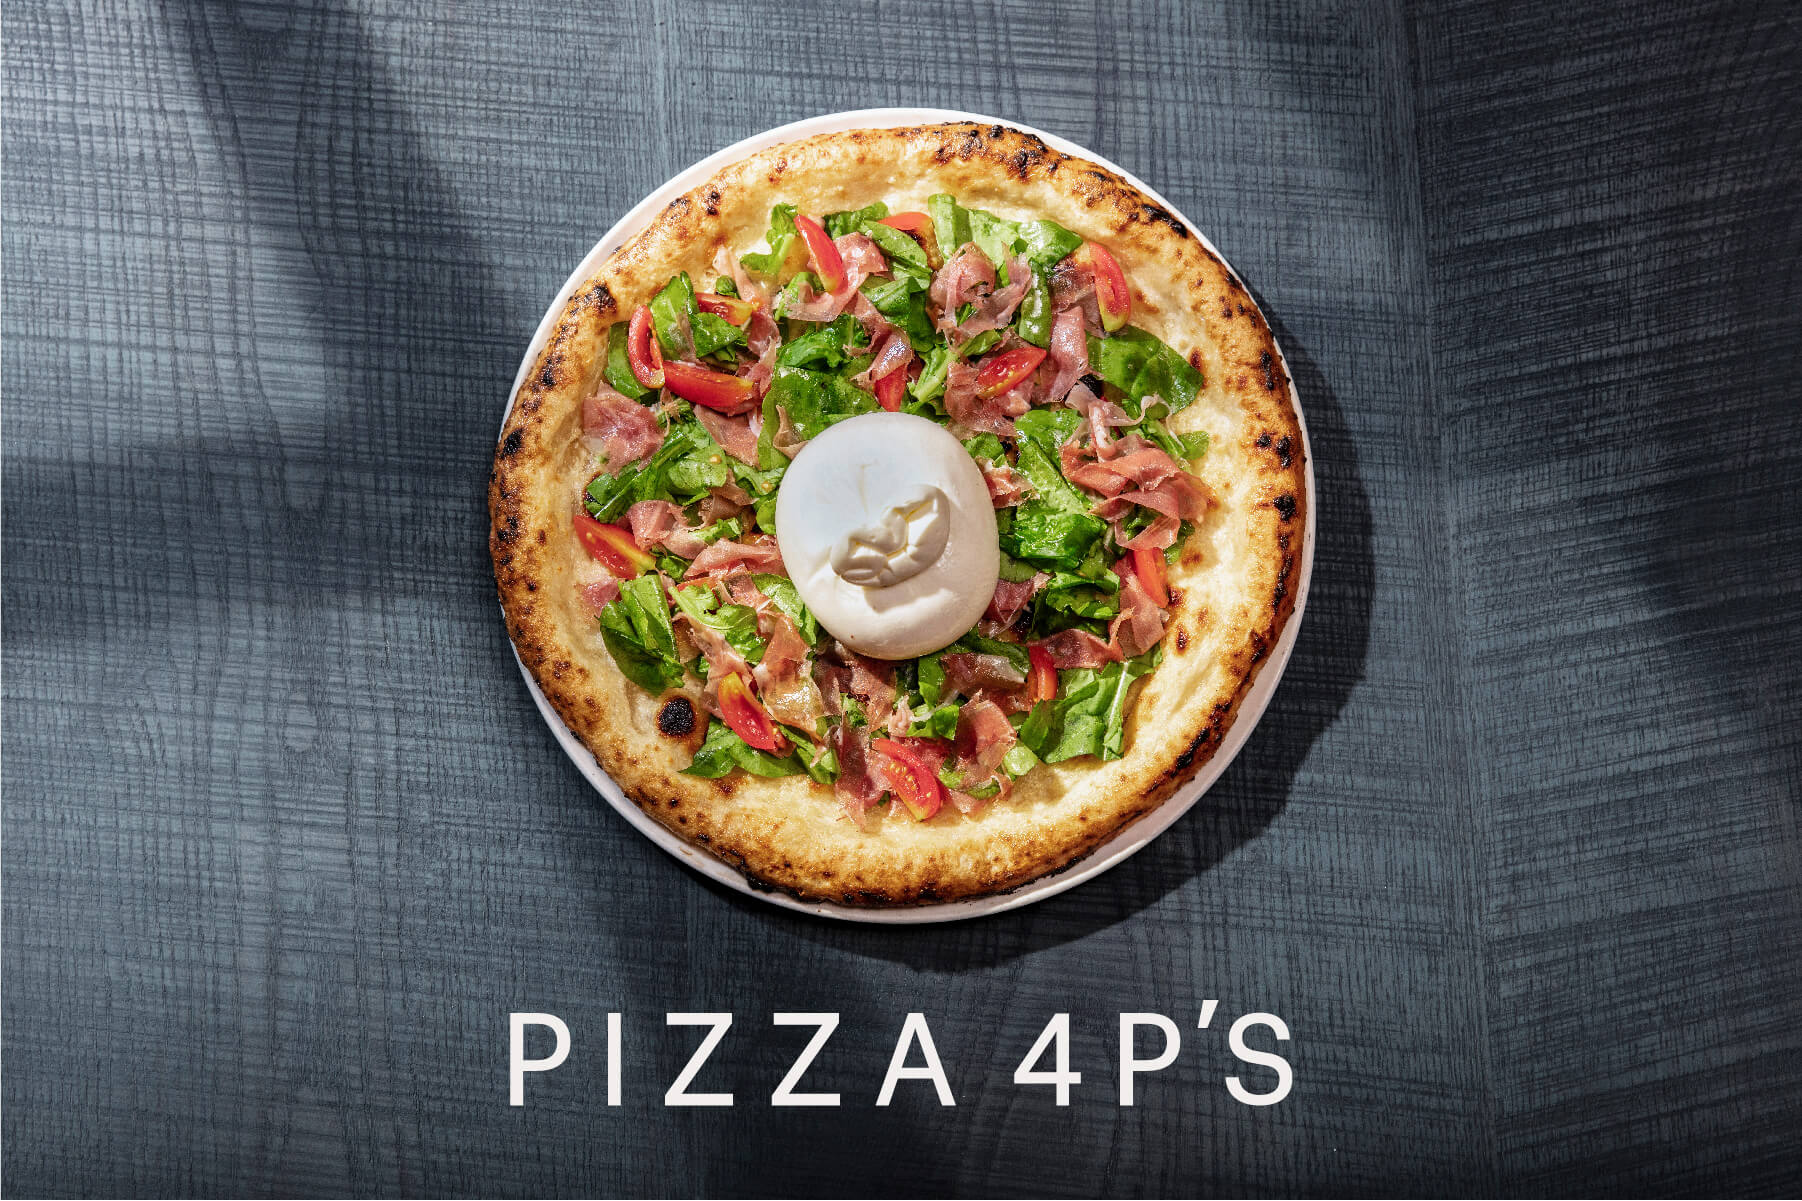 chiến lược marketing của Pizza 4P's